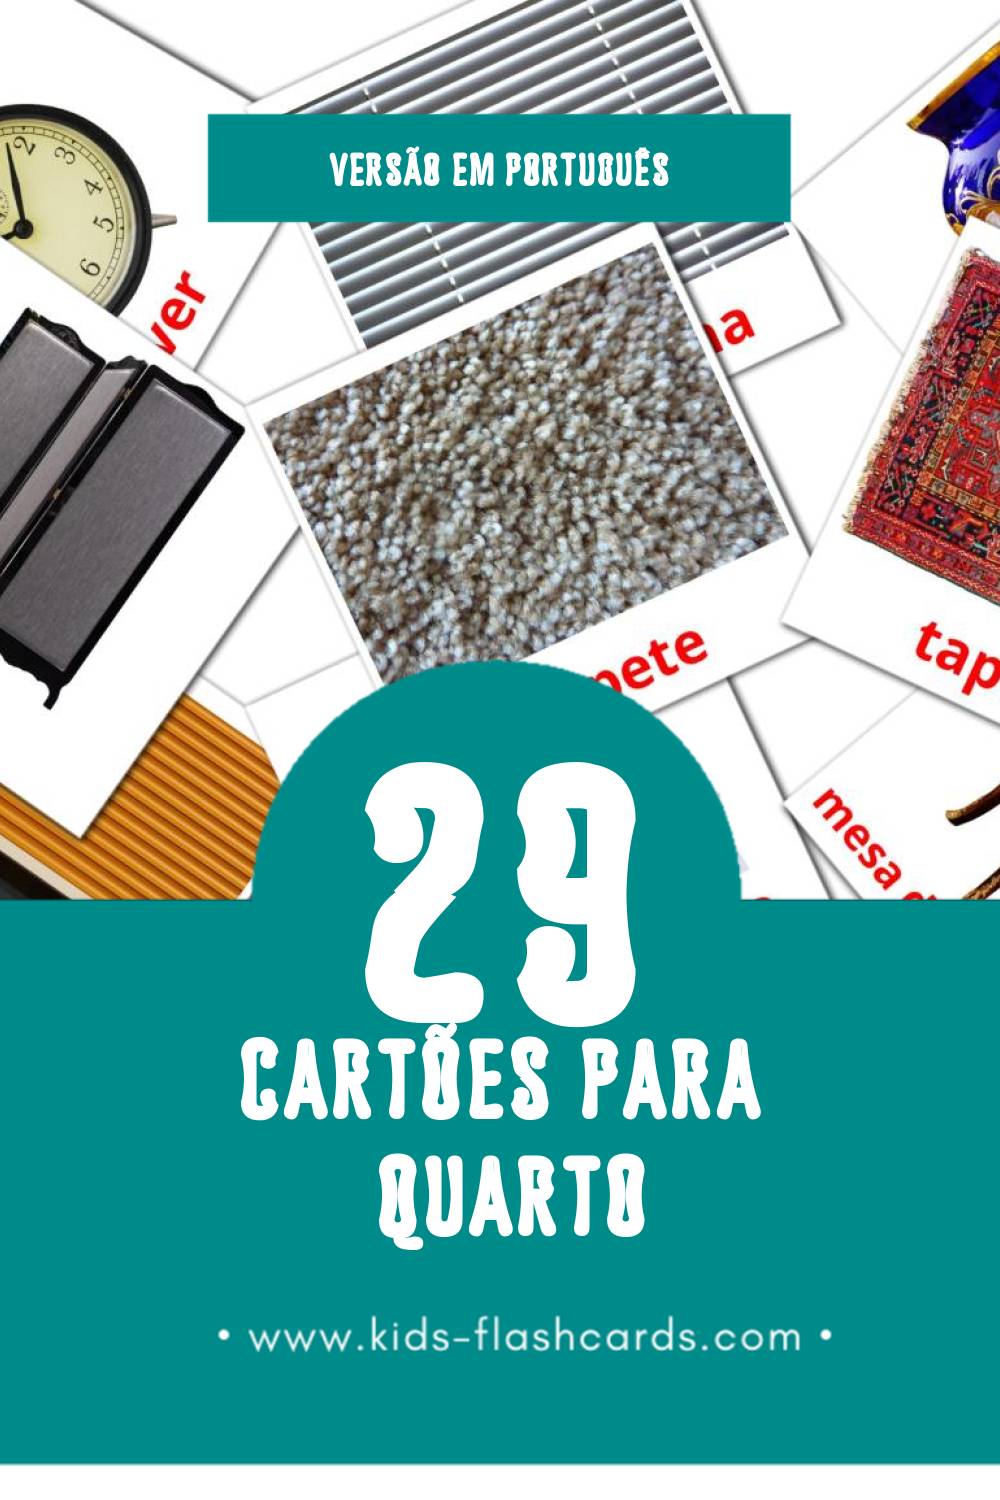 Flashcards de Quarto Visuais para Toddlers (33 cartões em Português)